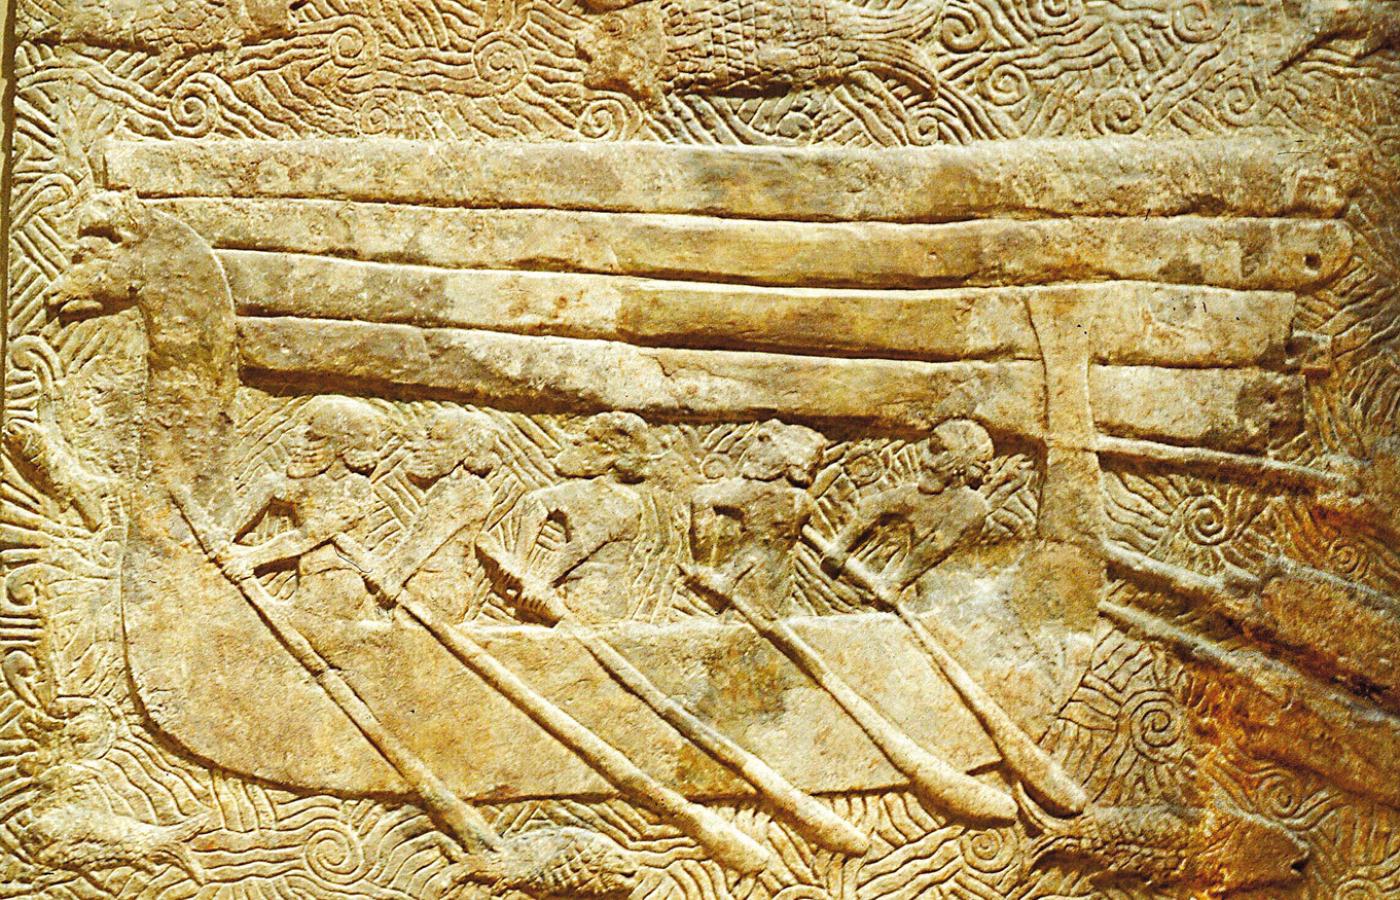 Fenicki statek transportujący cedr - relief z pałacu Sargona II (721 - 705 r. p.n.e.).